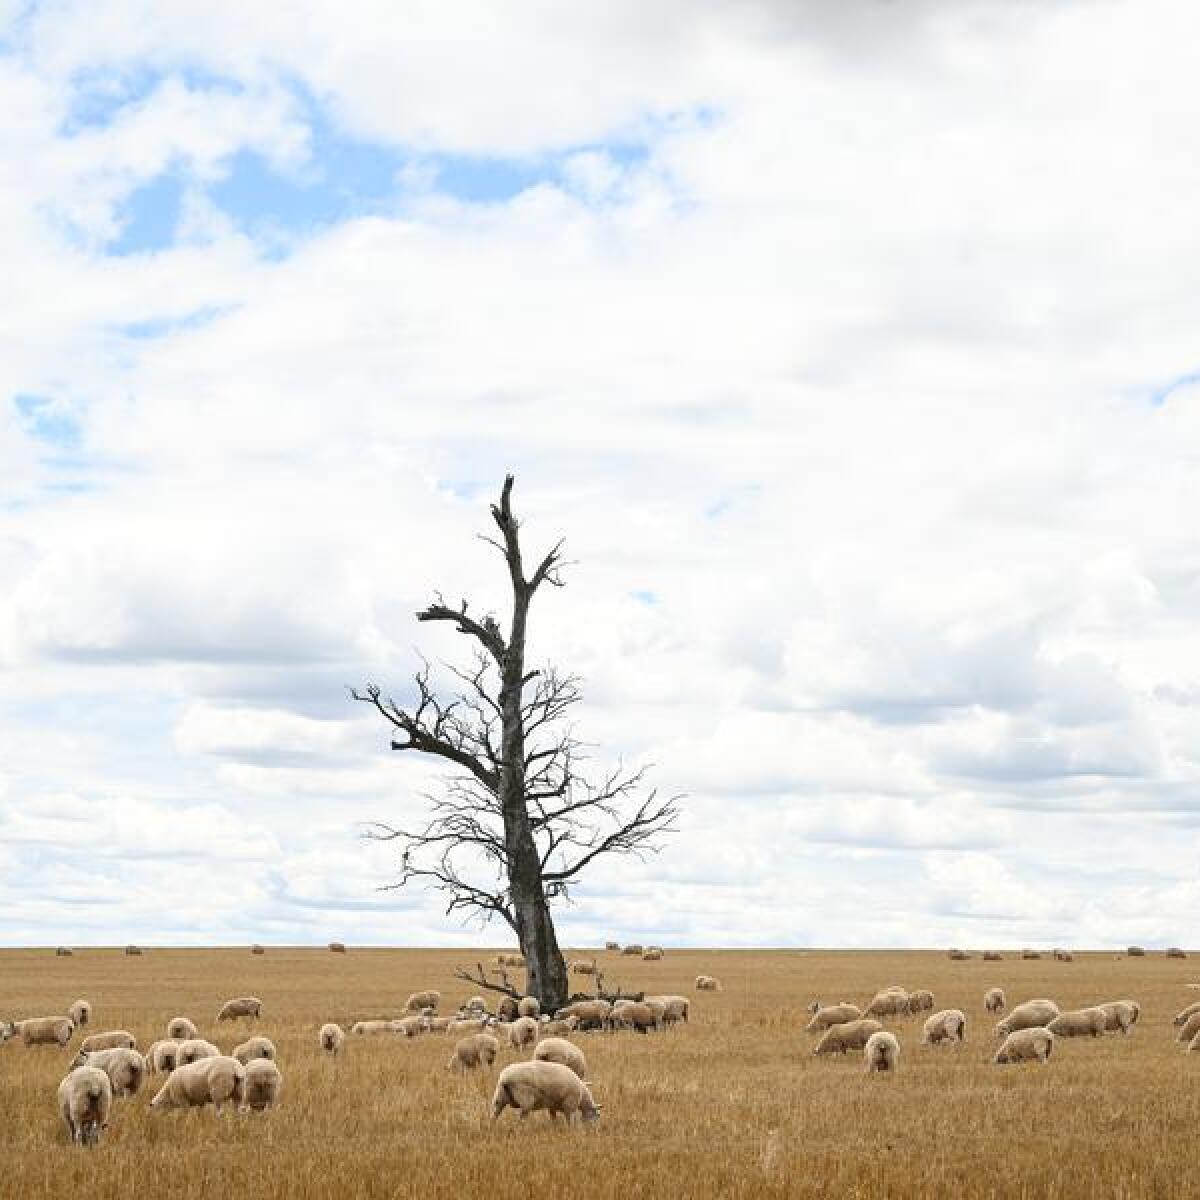 Sheep graze on wheat field